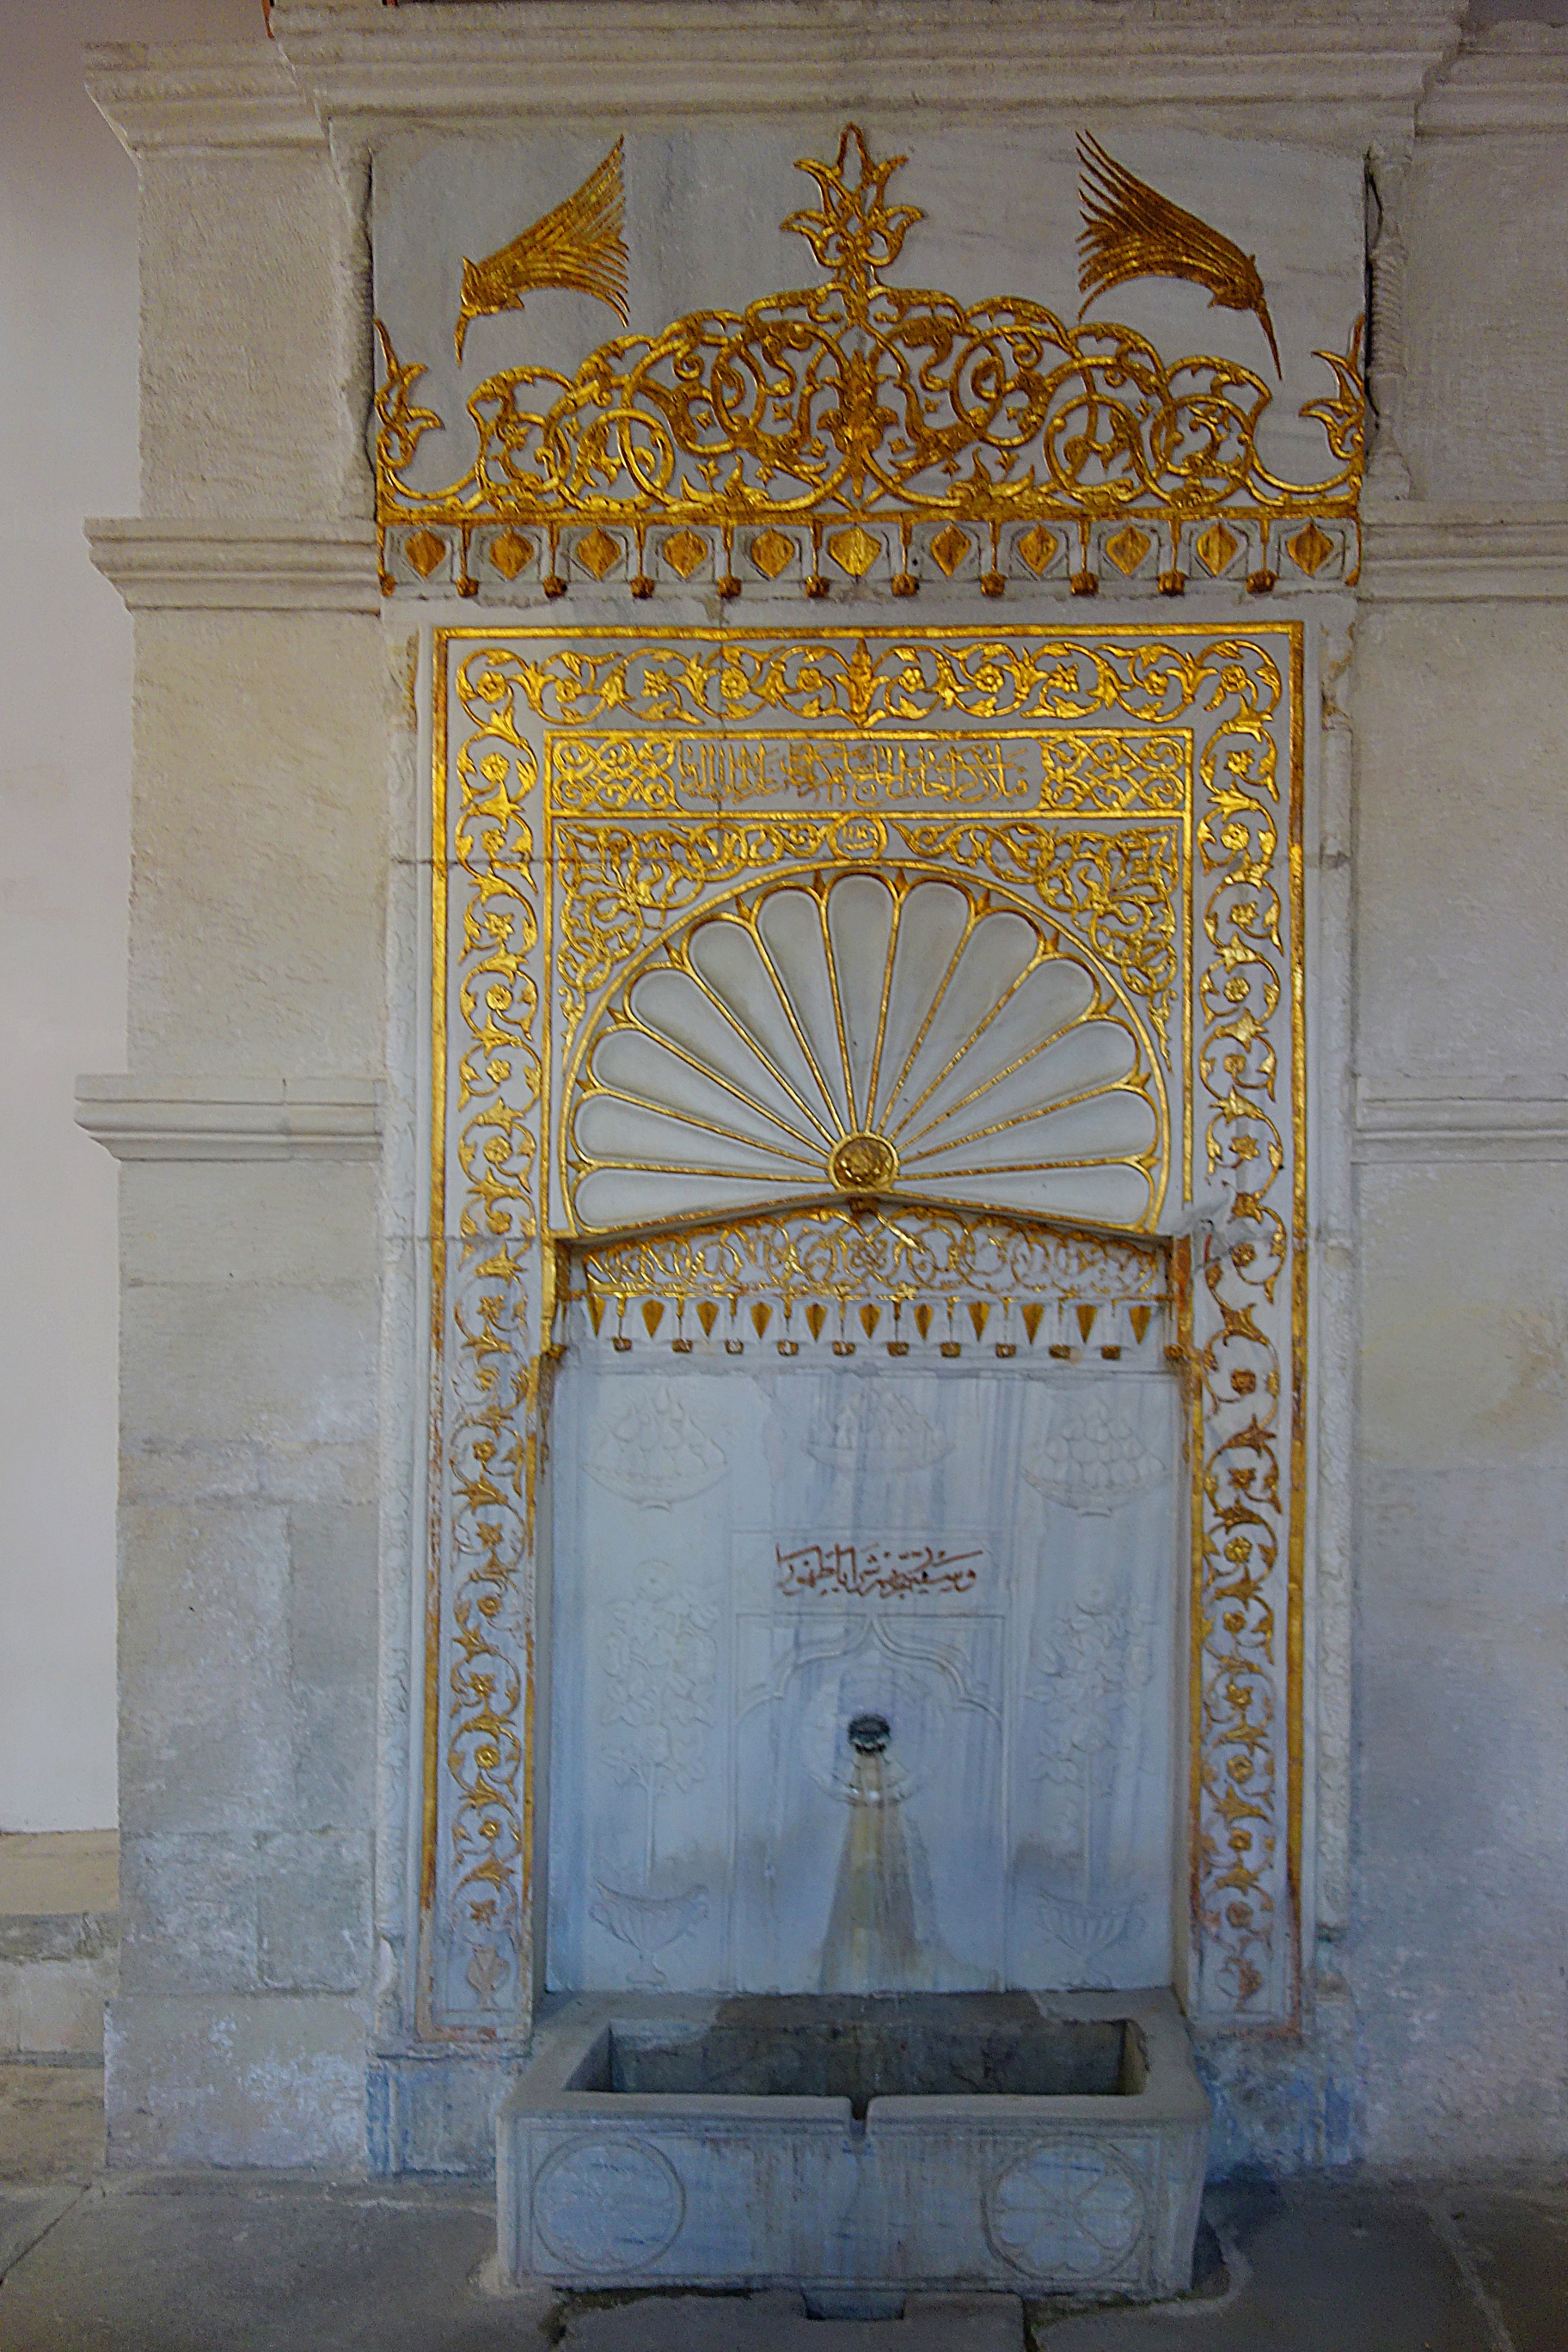 Один из фонтанов в Ханском дворце Бахчисарая. Фото Морошкина В.В.